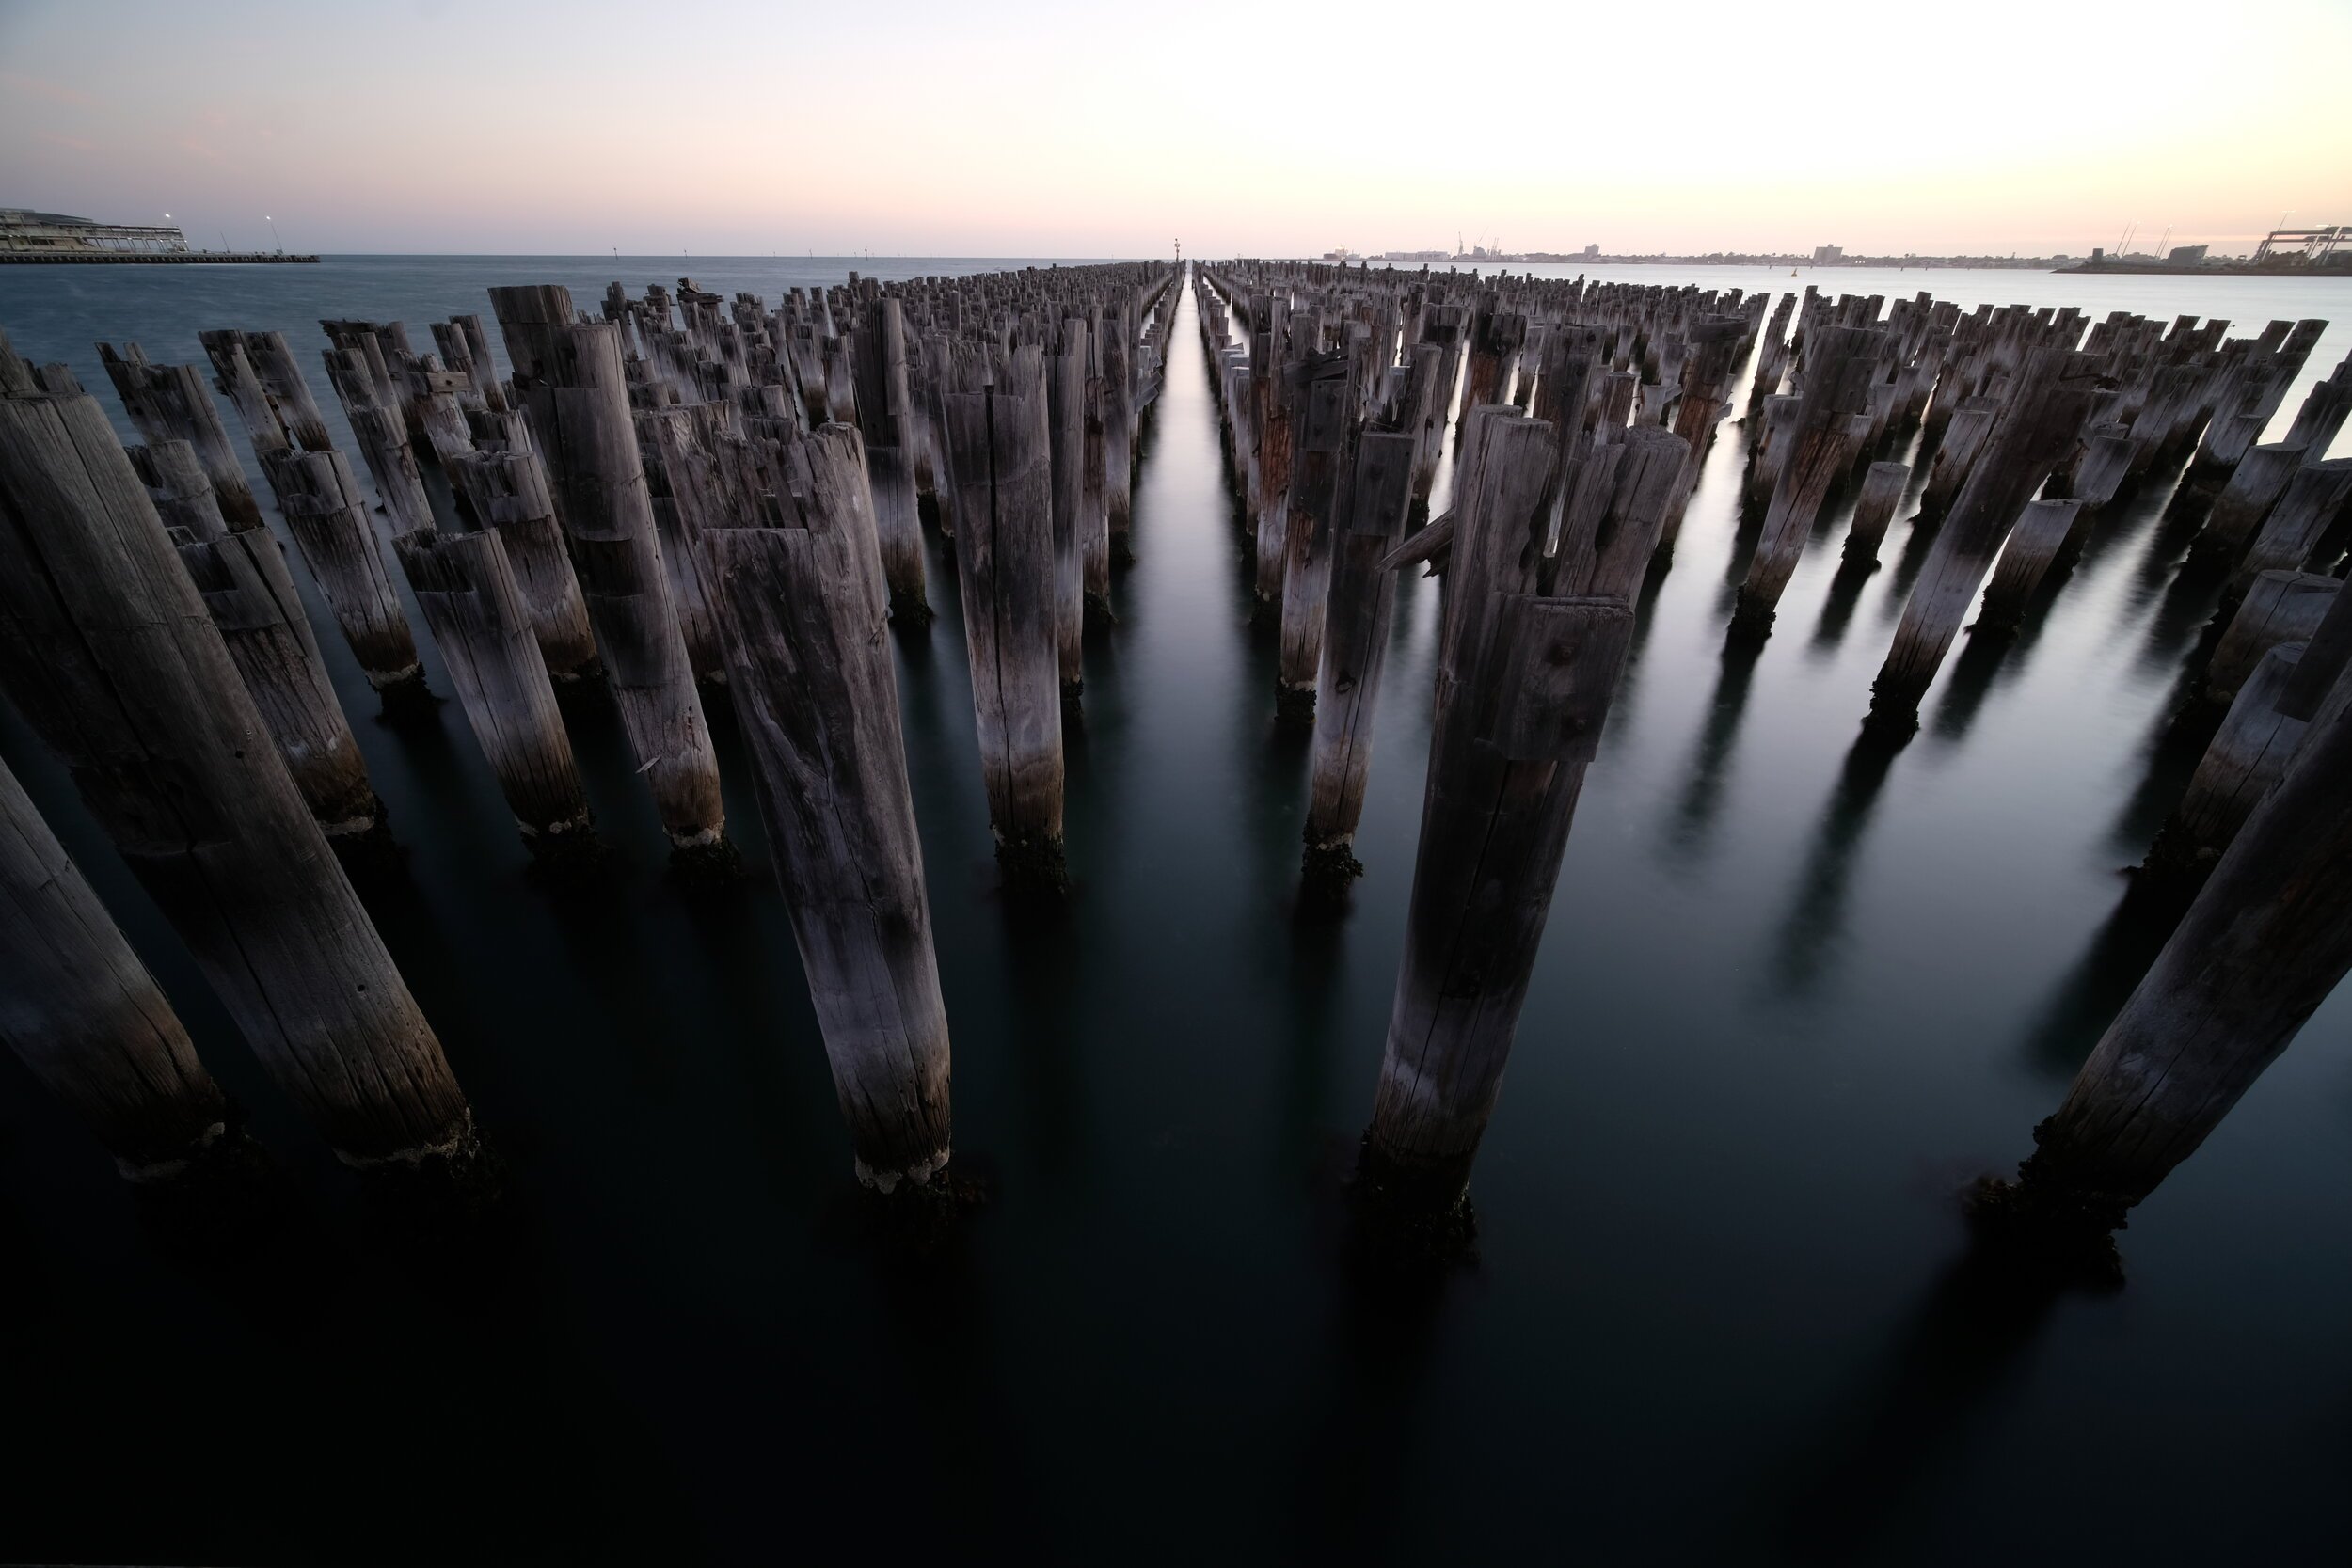 The Poles, Princes Pier, Port Melbourne